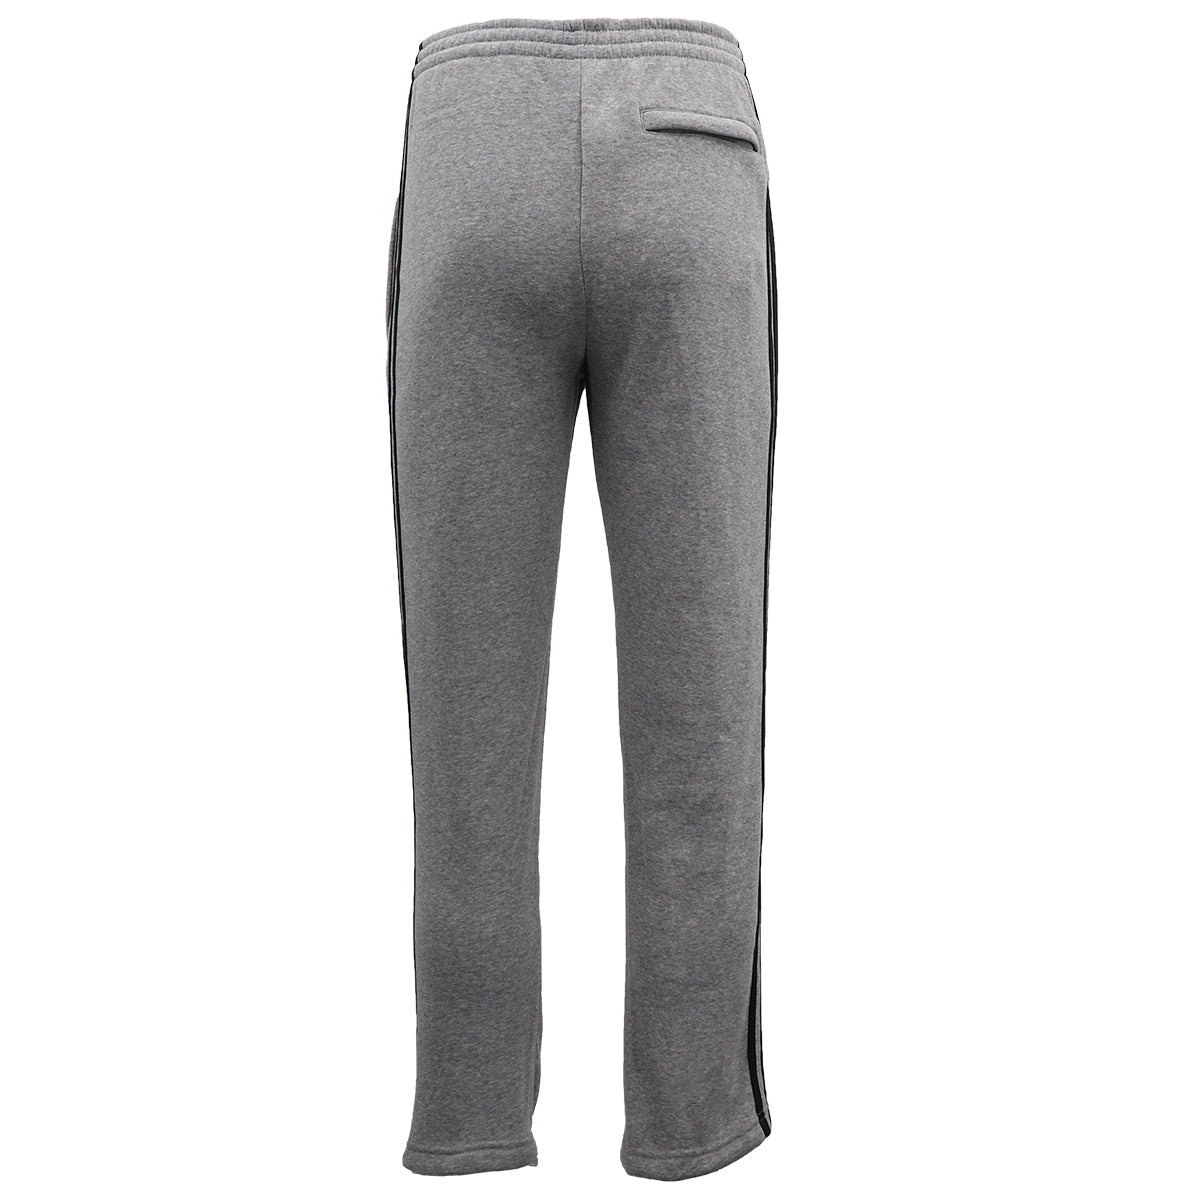 Men's Fleece Casual Sports Track Pants w Zip Pocket Striped Sweat Trousers S-6XL, Dark Grey, XL